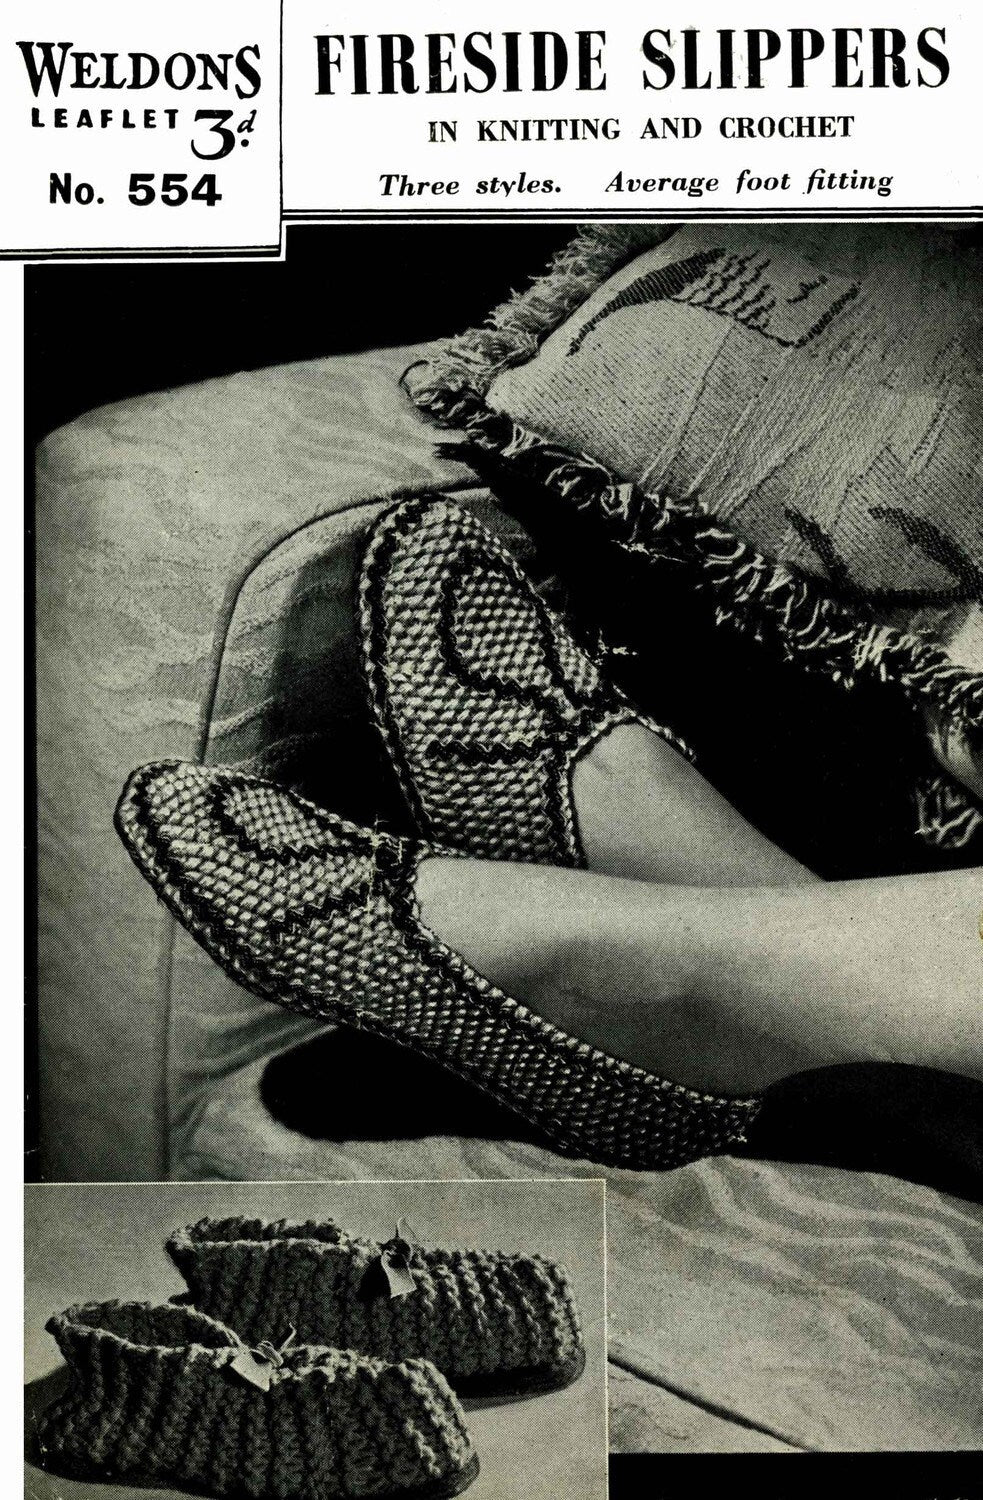 Fireside Slippers in Three Styles, 40s Knitting Pattern and Crochet Pattern, Weldons 554